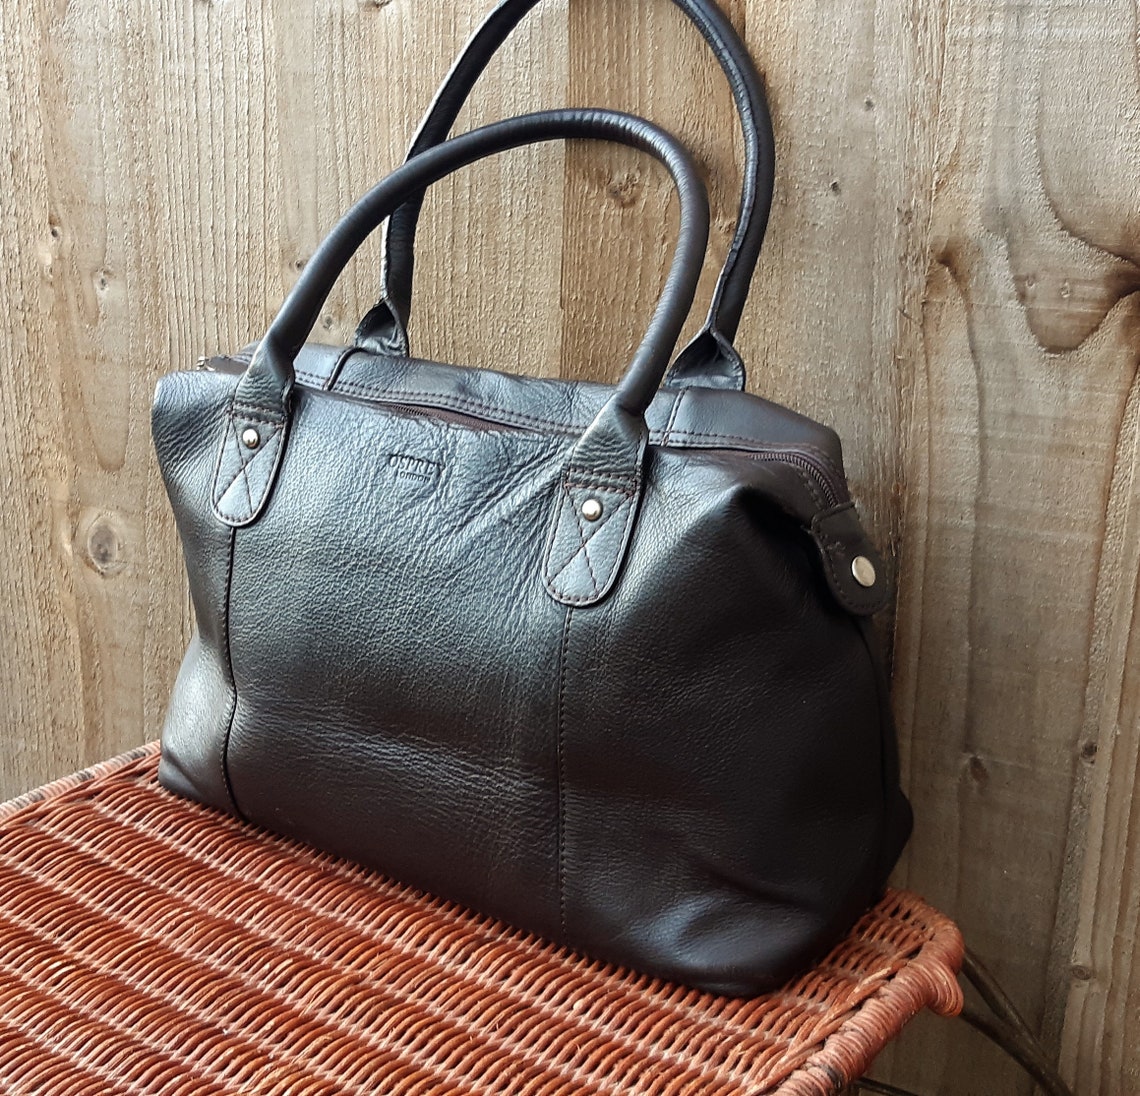 Osprey London dark brown leather satchel tote shoulder bag | Etsy